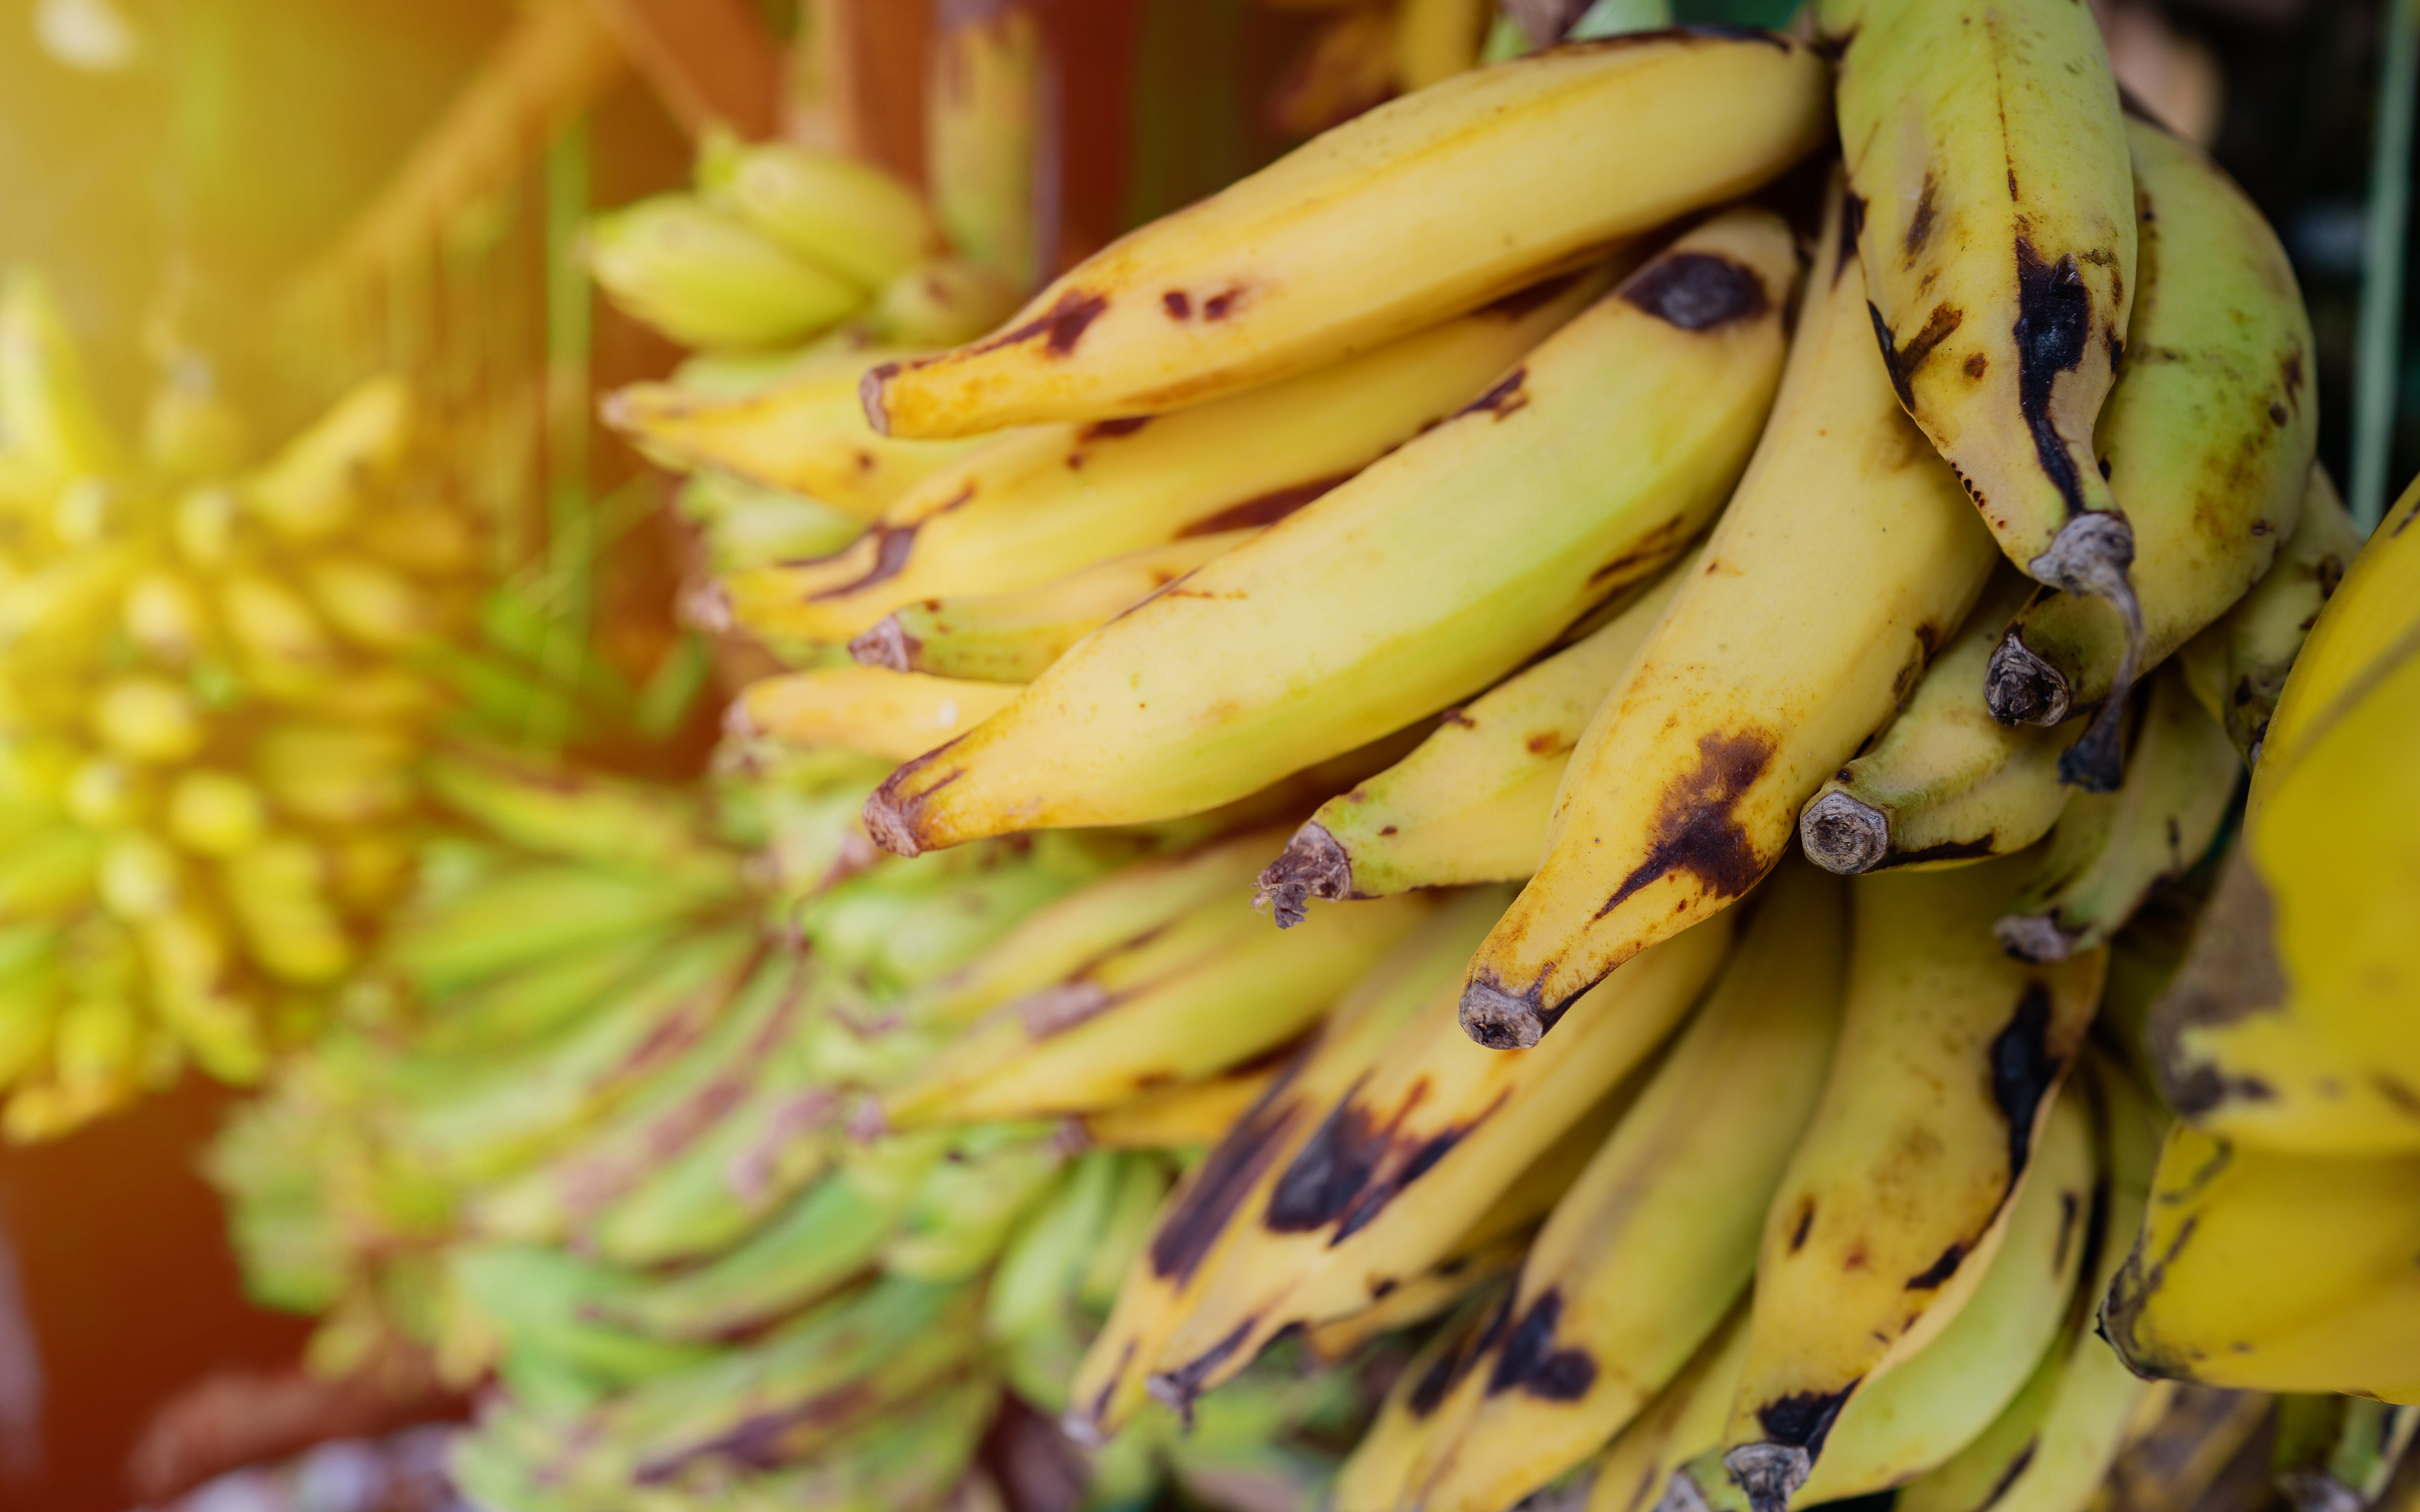     Des bananes jaunes traitées à l'éthéphon en Guadeloupe

